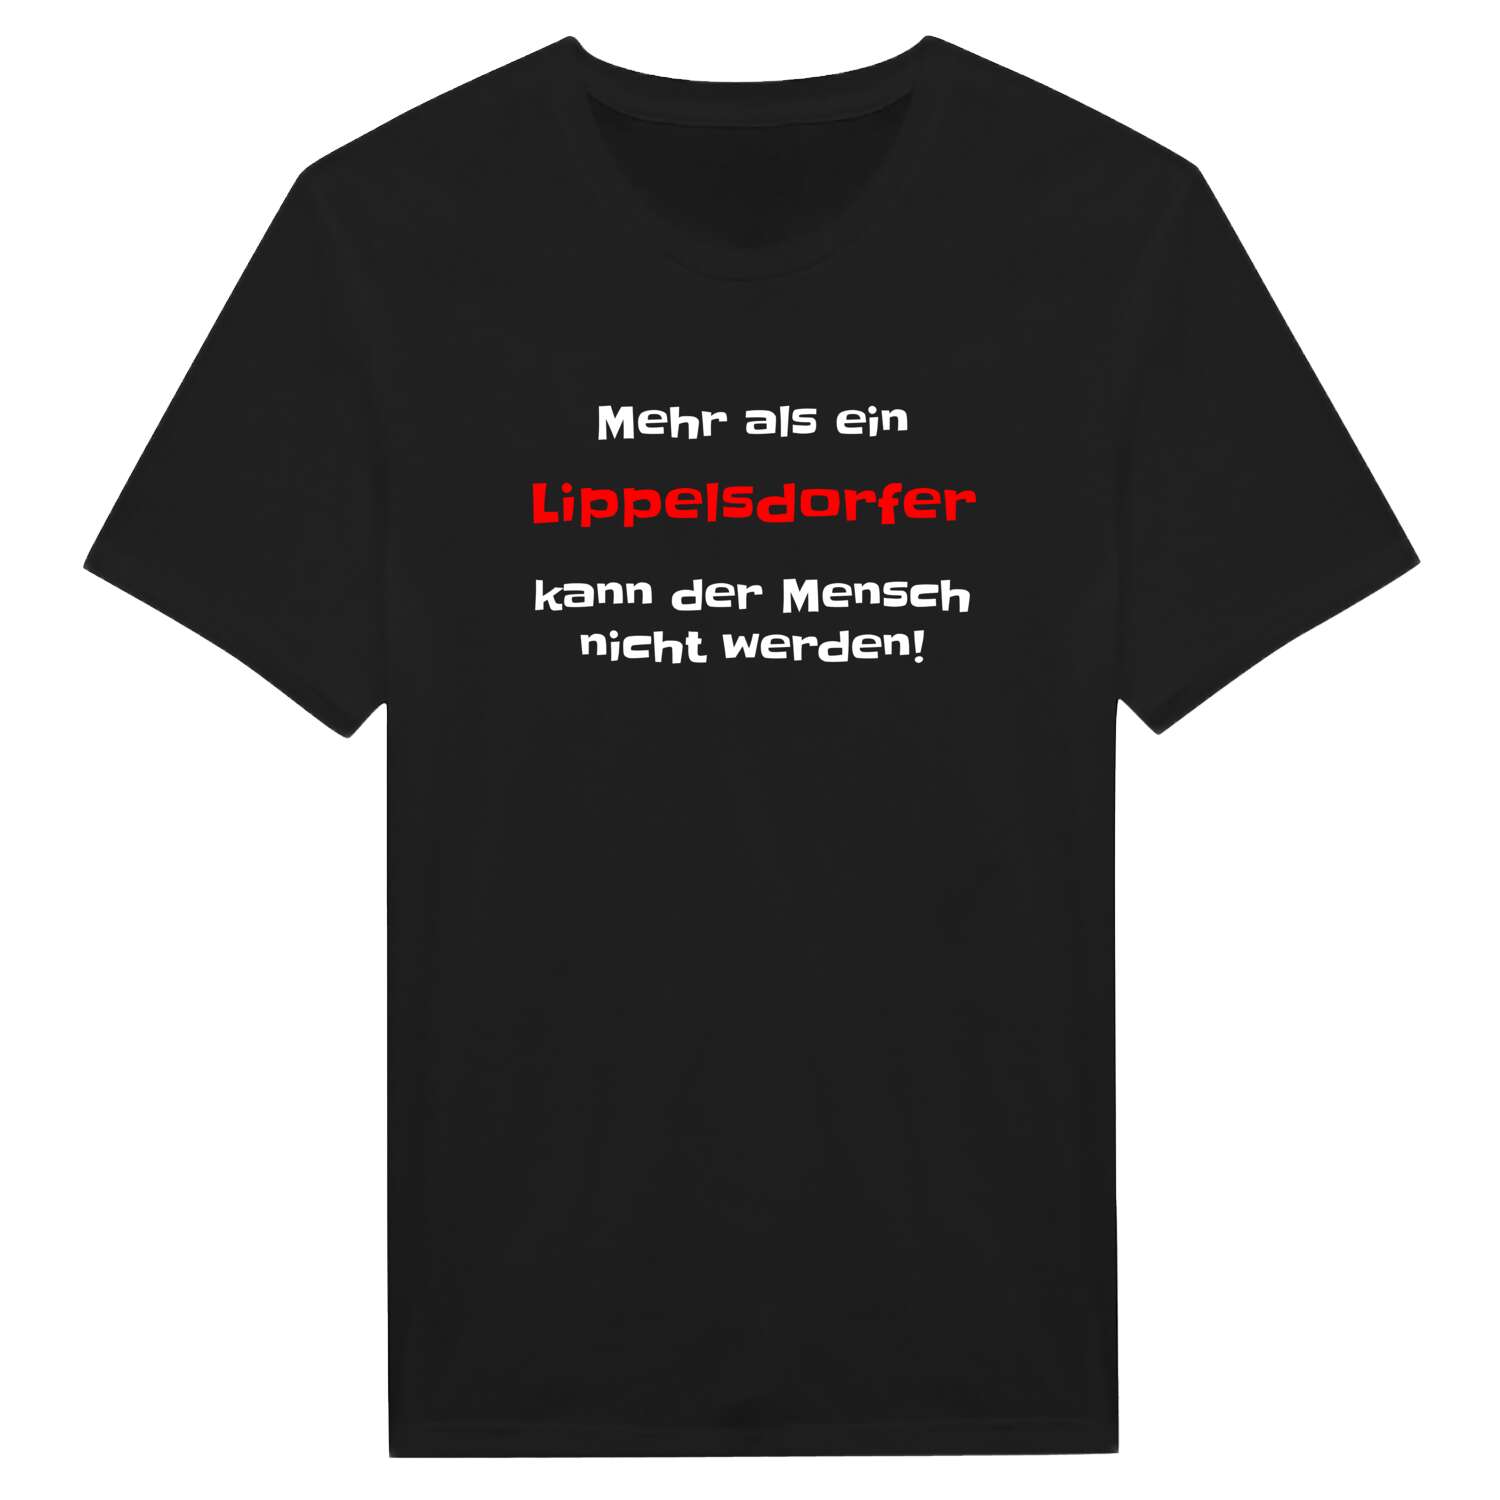 Lippelsdorf T-Shirt »Mehr als ein«